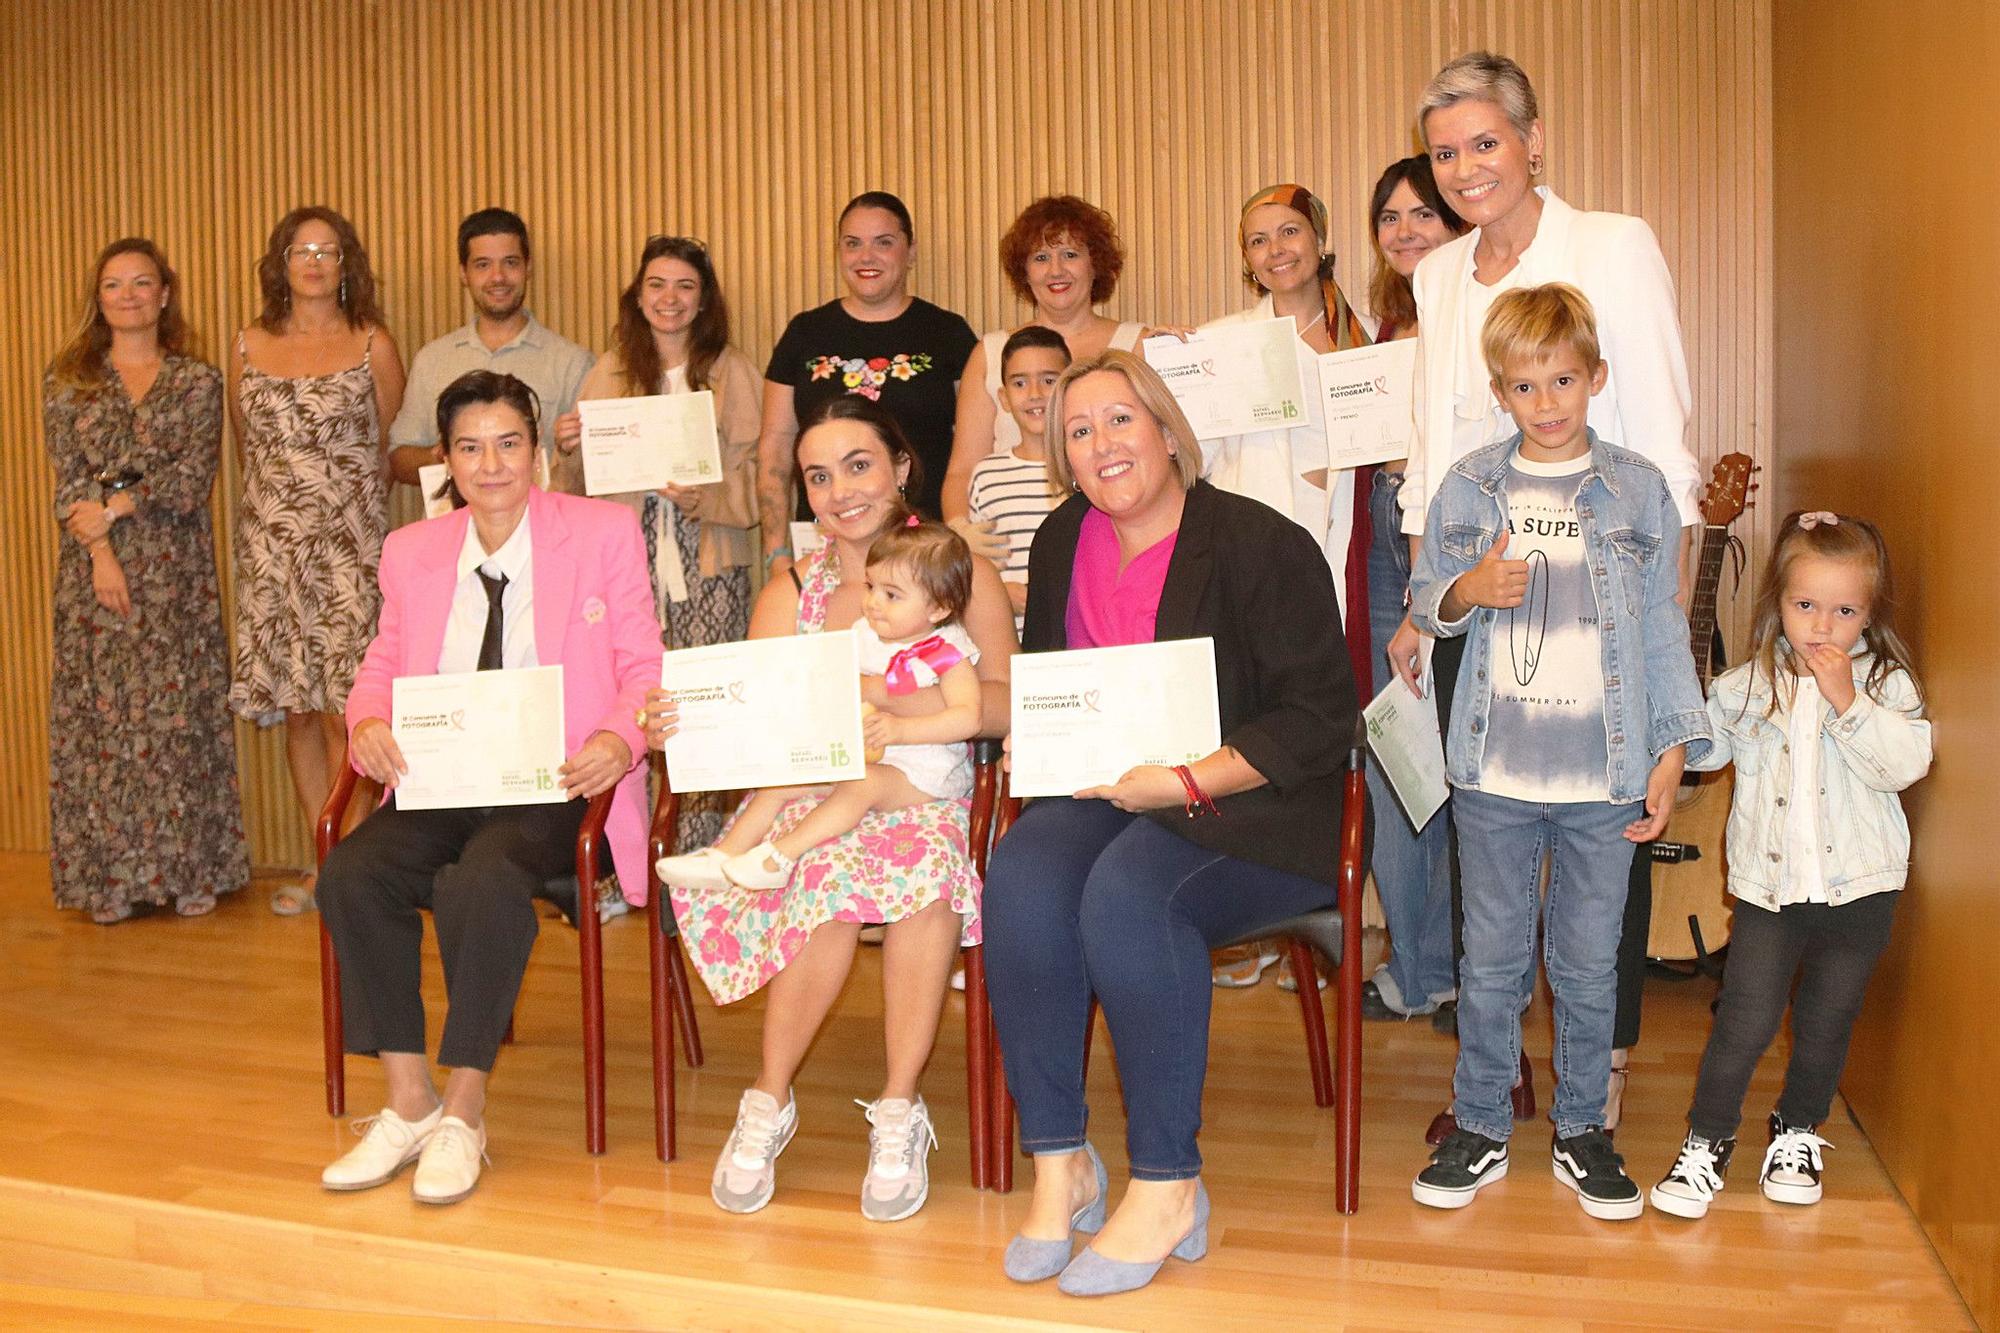 El acto de entrega de premios y distinciones a las fotografías finalistas tuvo lugar la tarde del martes 17 de octubre en el Auditorio de Instituto Bernabeu en Alicante.